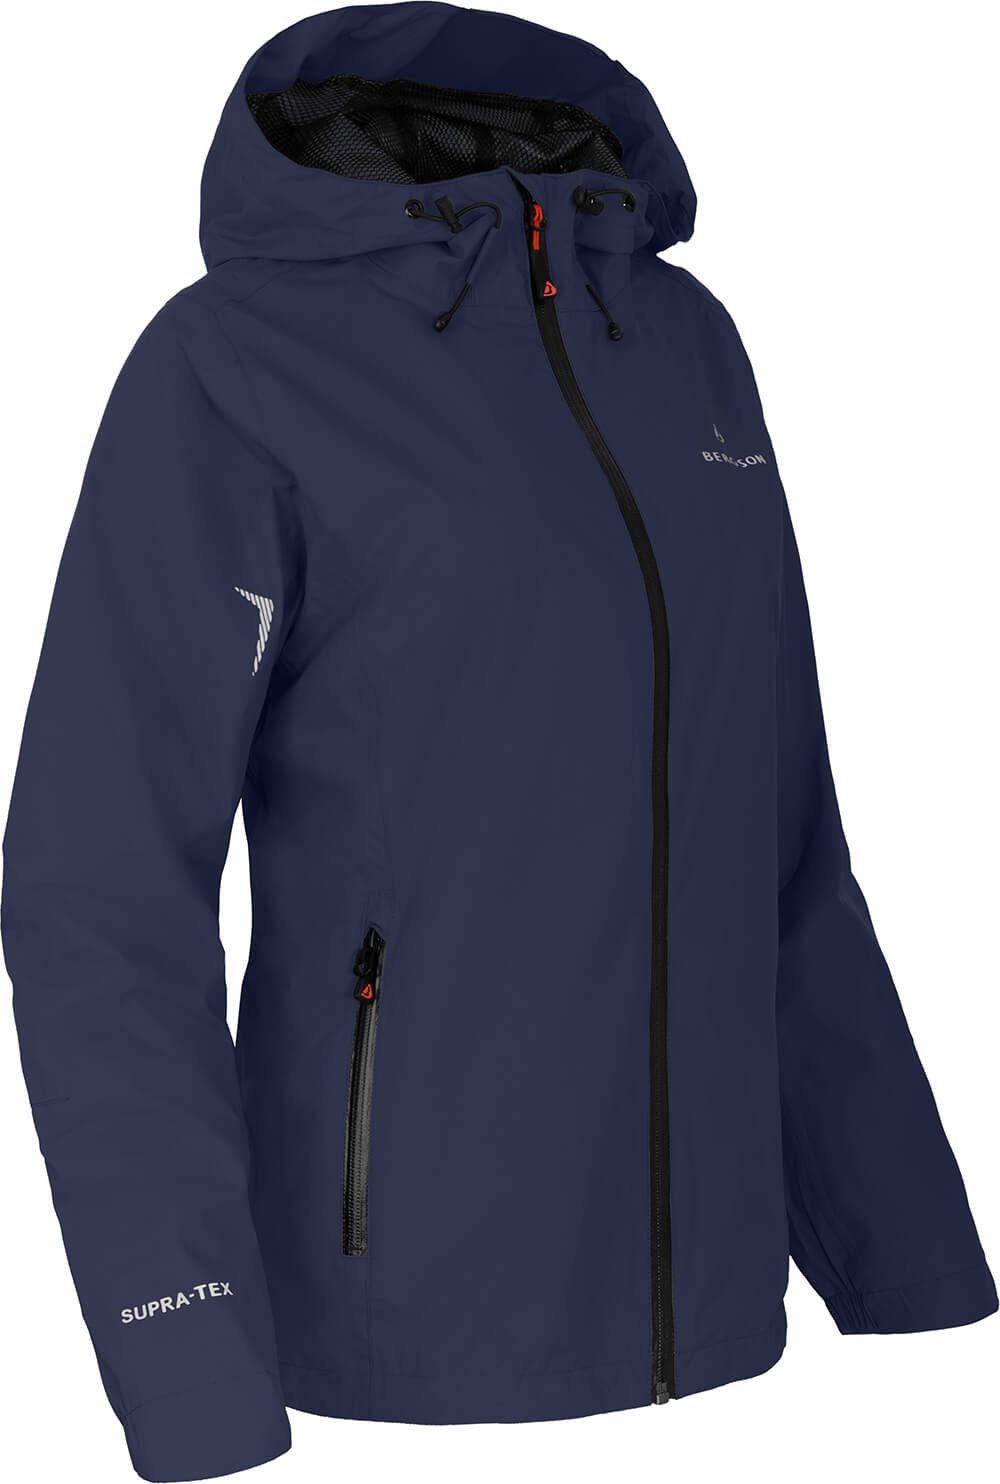 Bergson Outdoorjacke HELLI Damen Regenjacke, Netzfutter, 12000 mm Wassersäule, Kurzgrößen, peacoat blau | Jacken